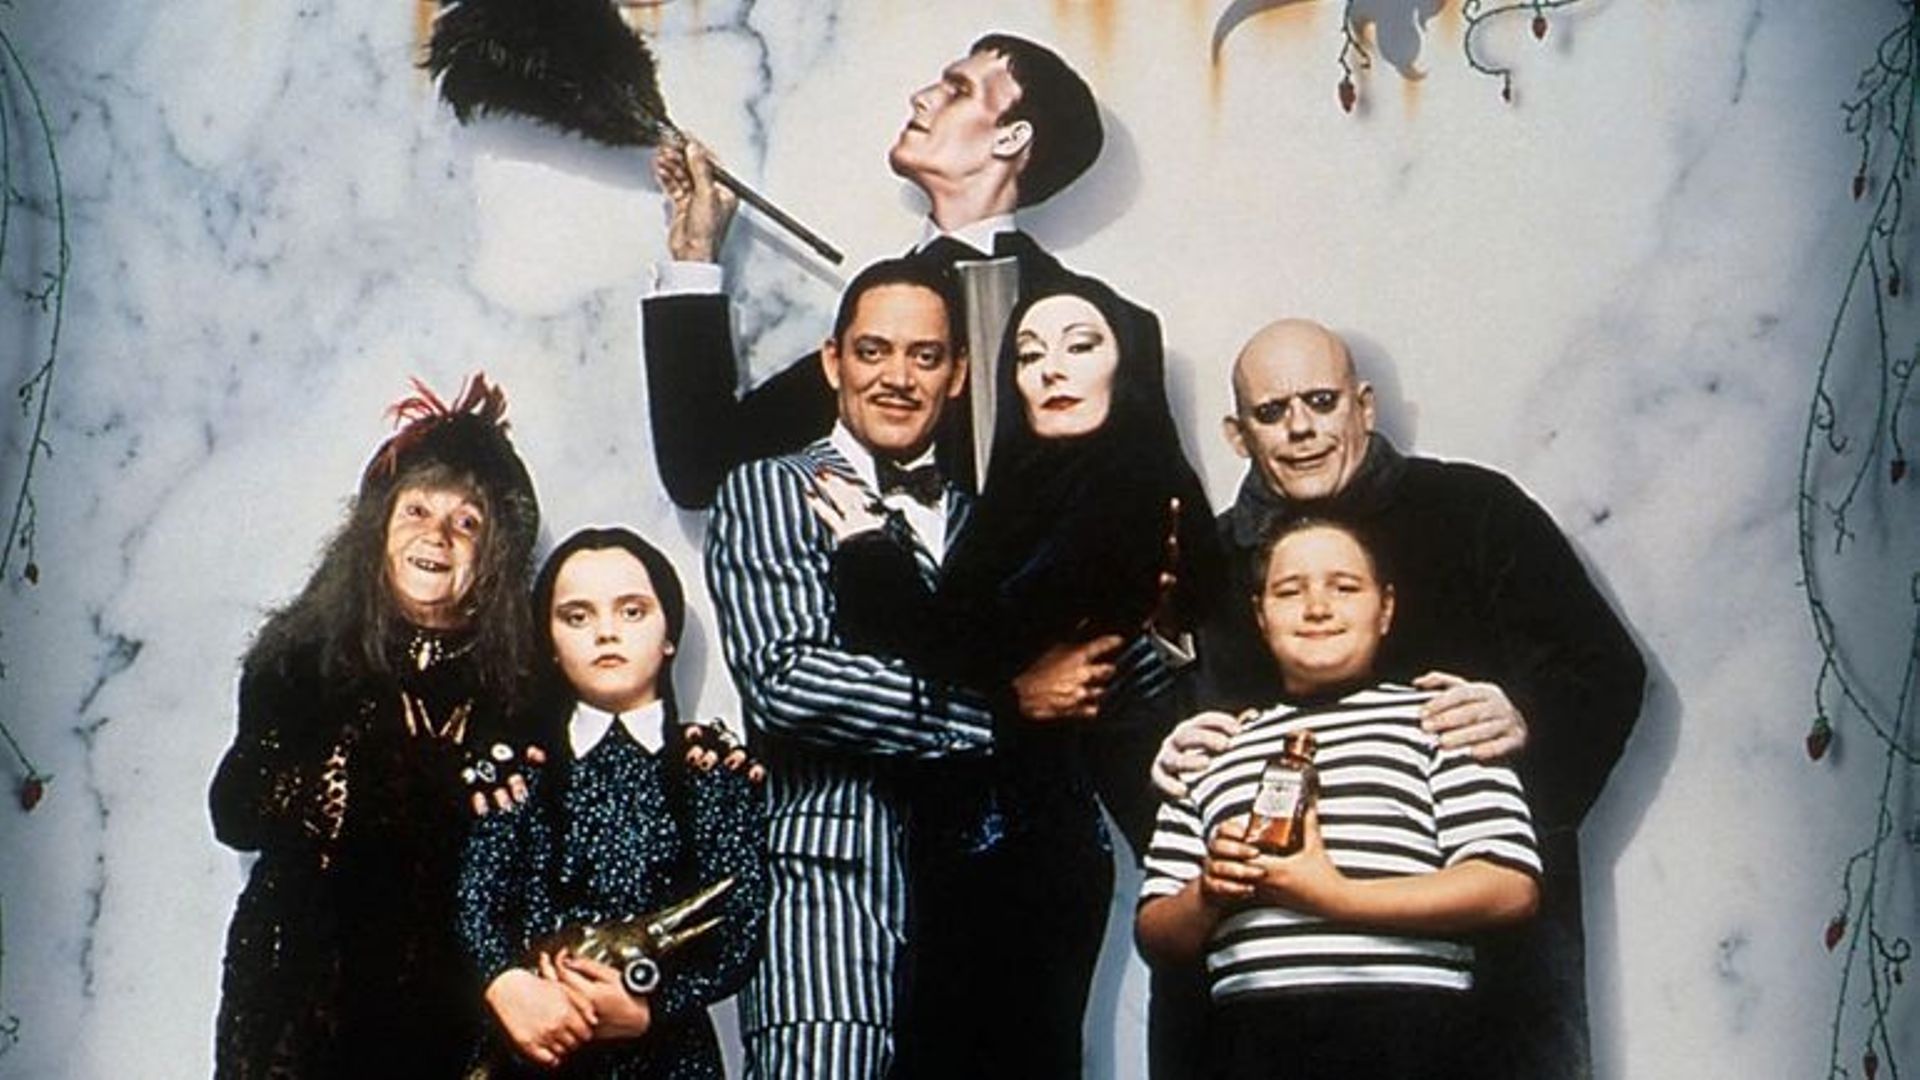 La famille Addams, film de Barry Sonnenfeld.